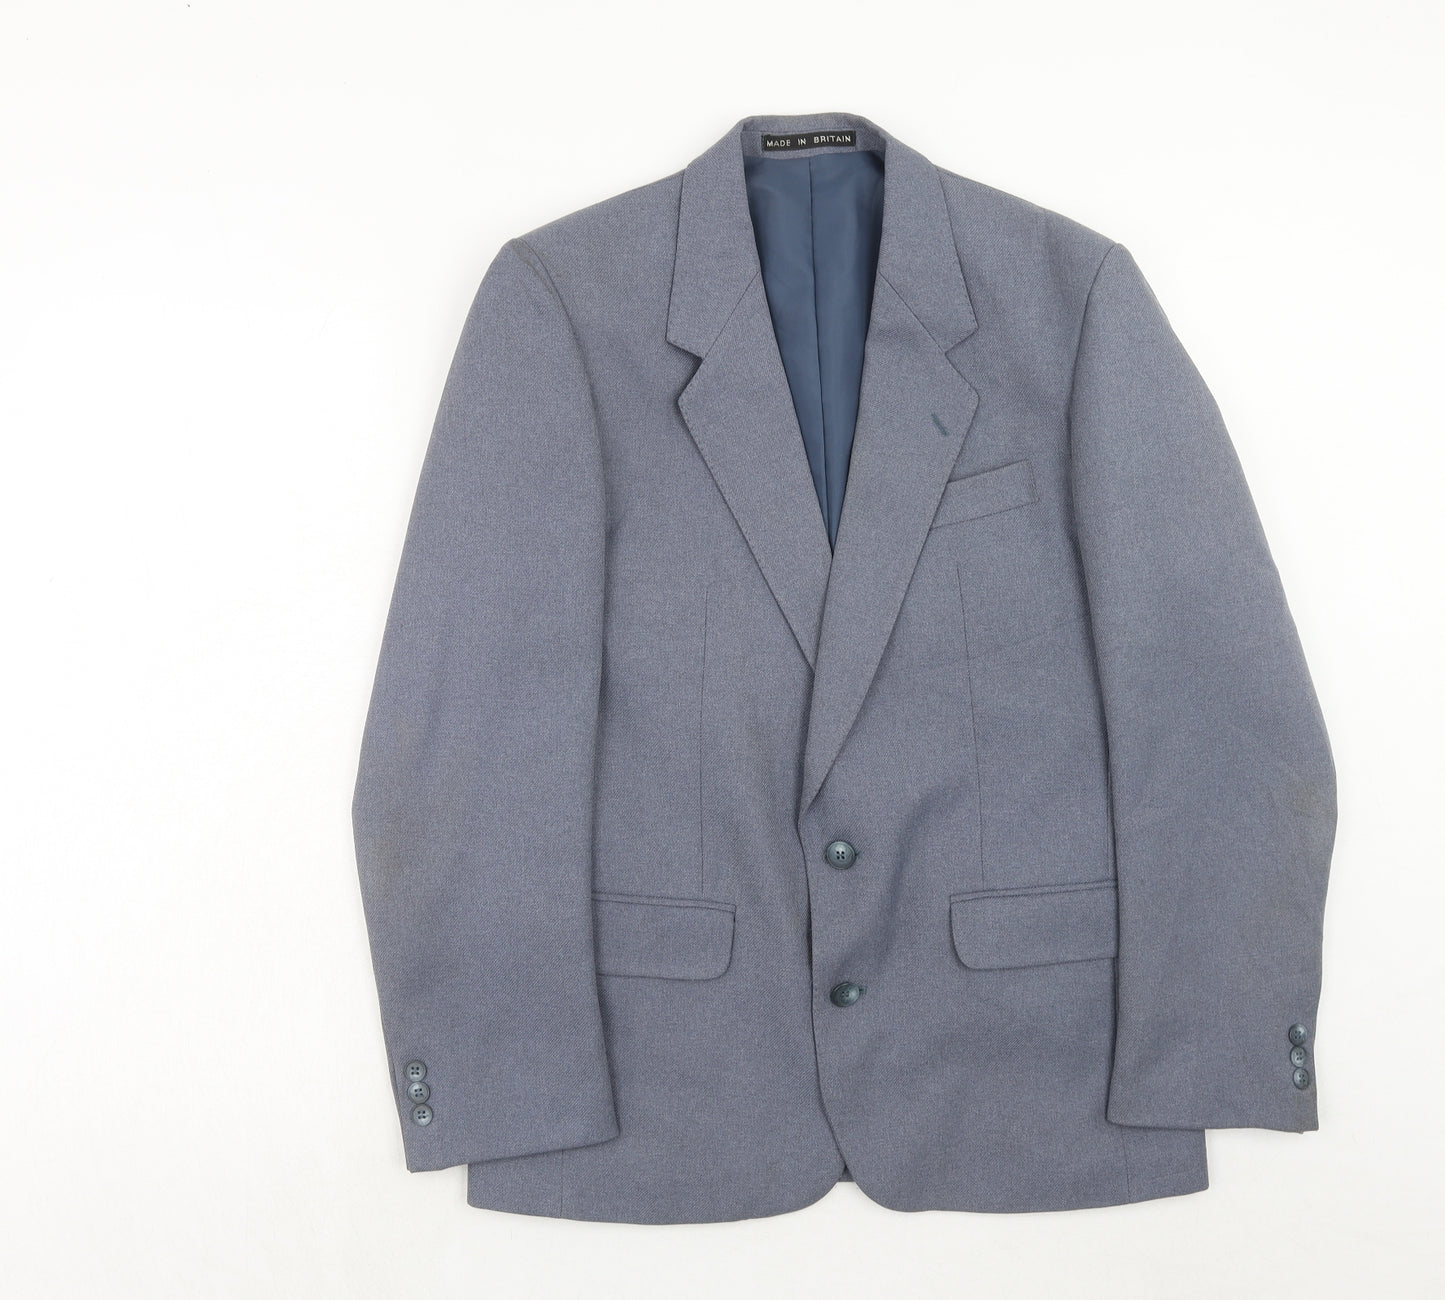 Greenwoods Mens Blue Polyester Jacket Suit Jacket Size 38 Regular